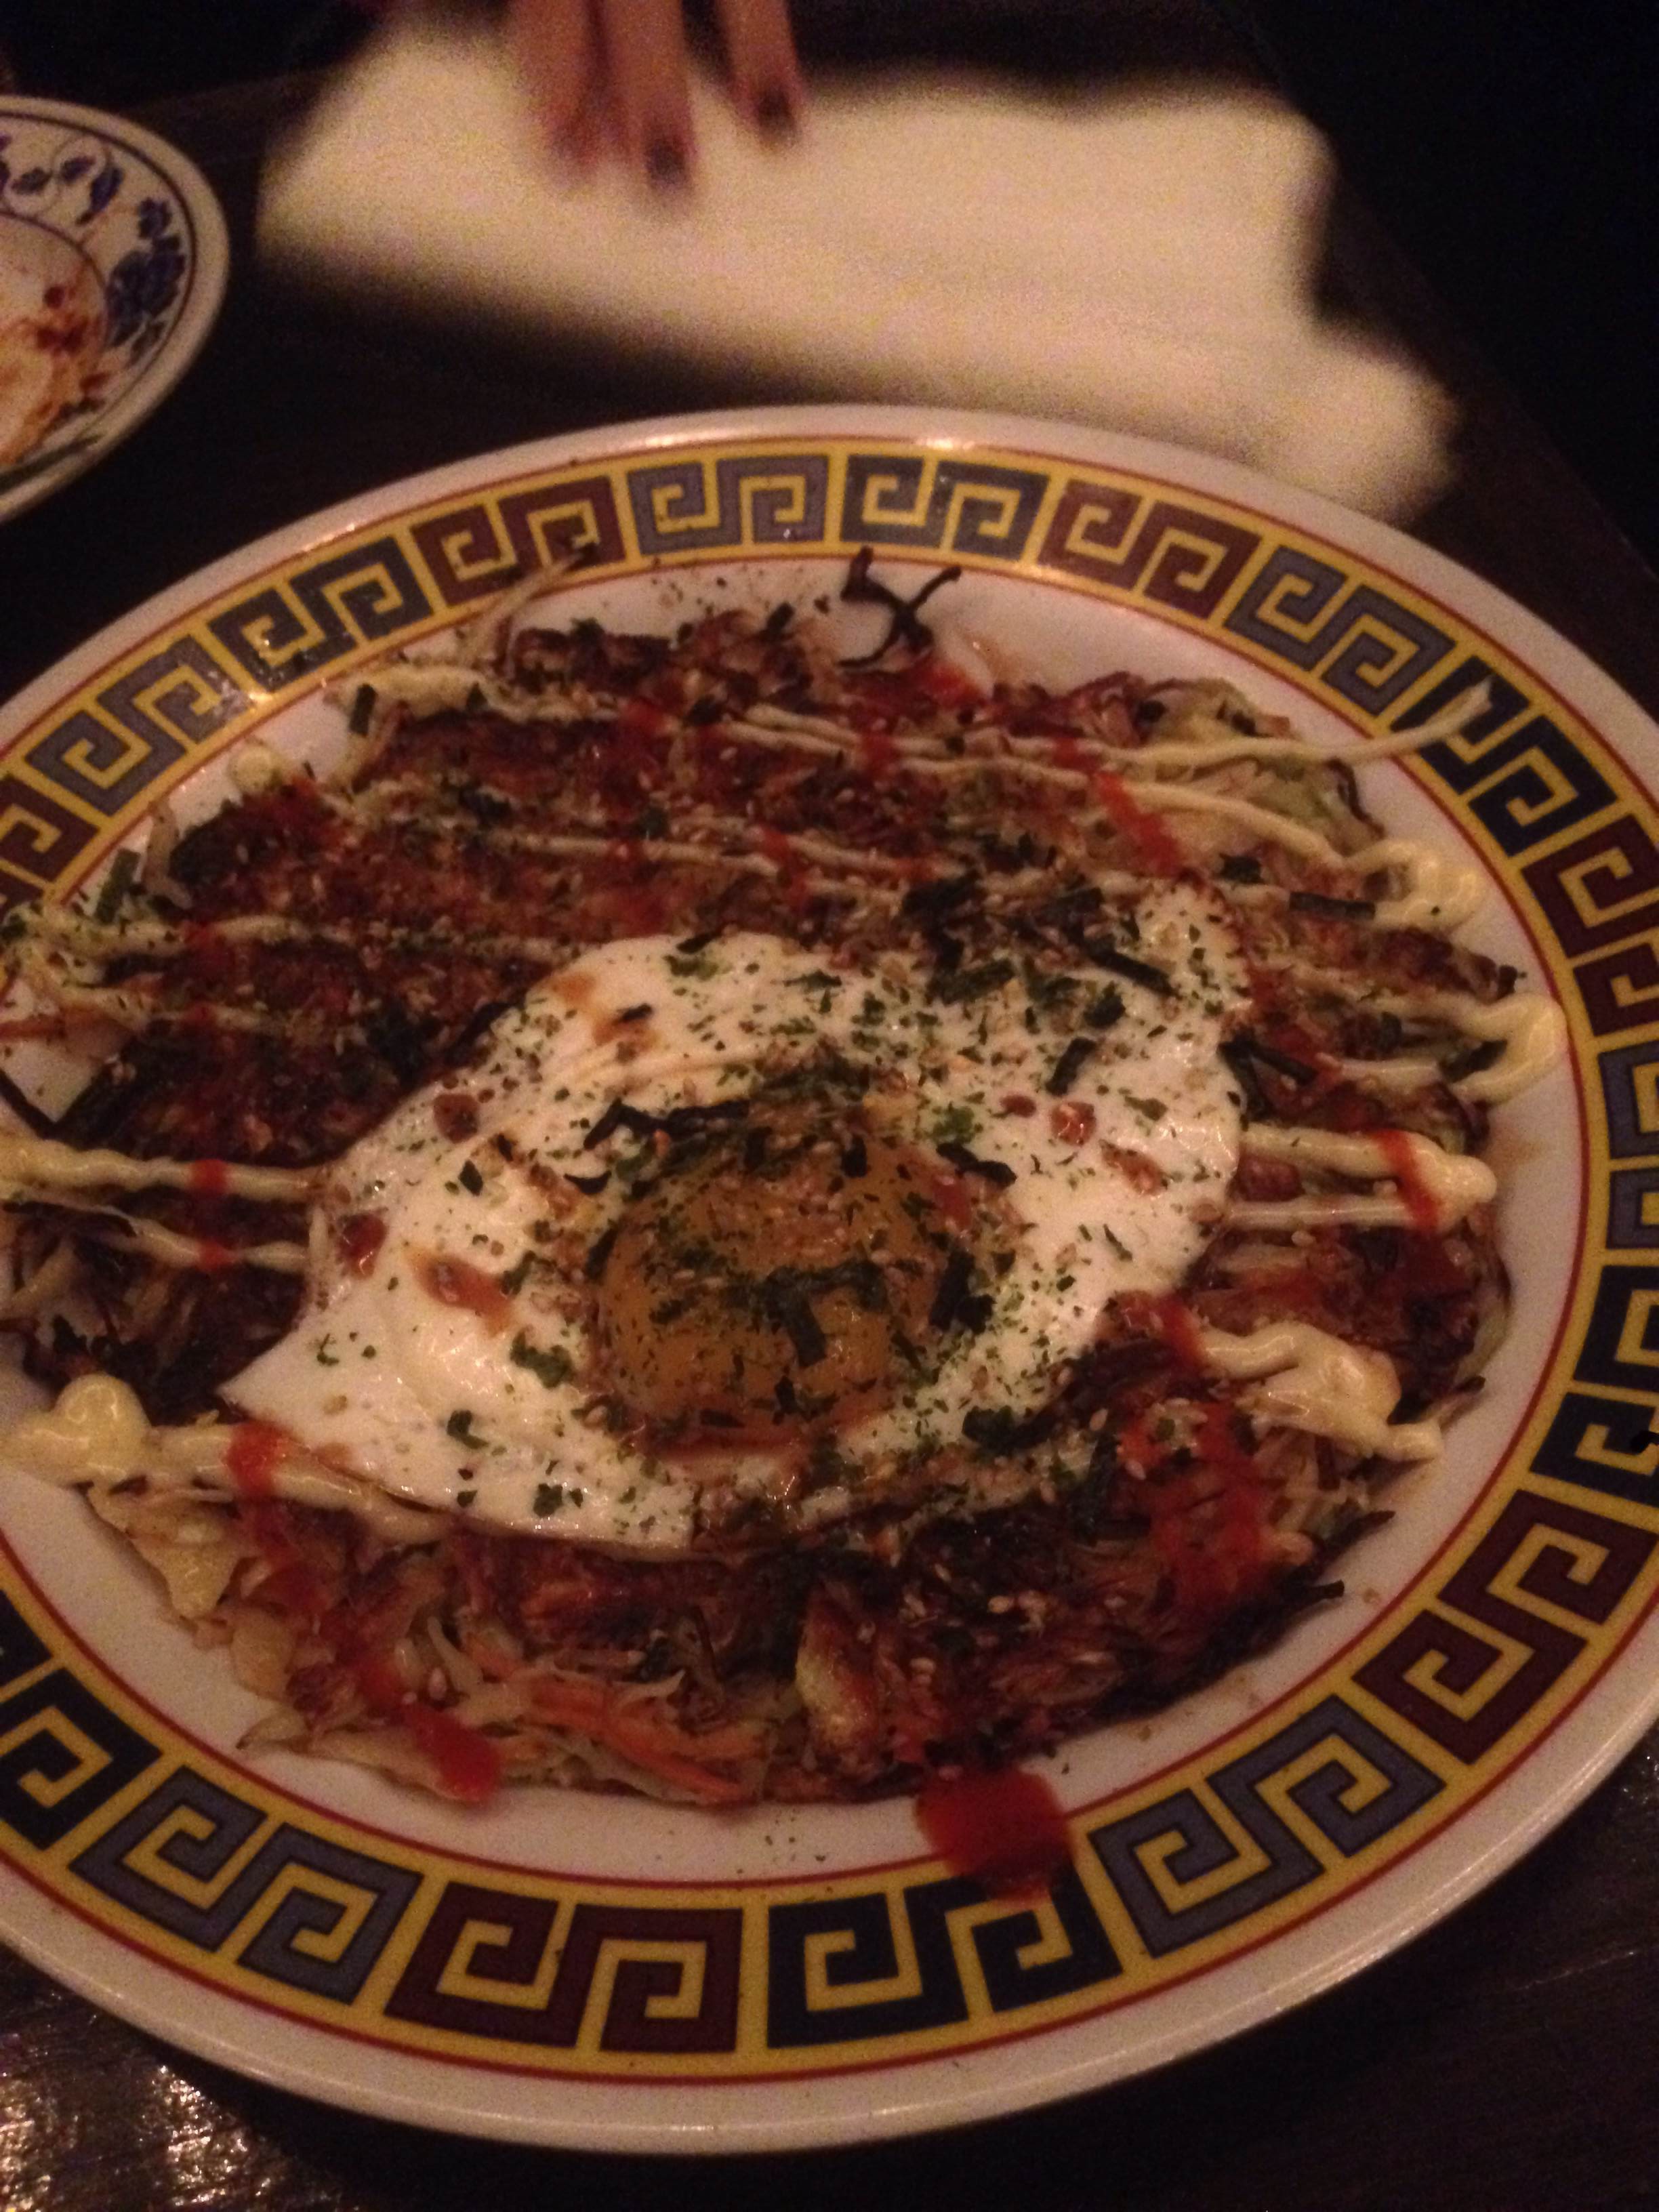 1 - Get the okonomiyaki at Xiao Bao Biscuit